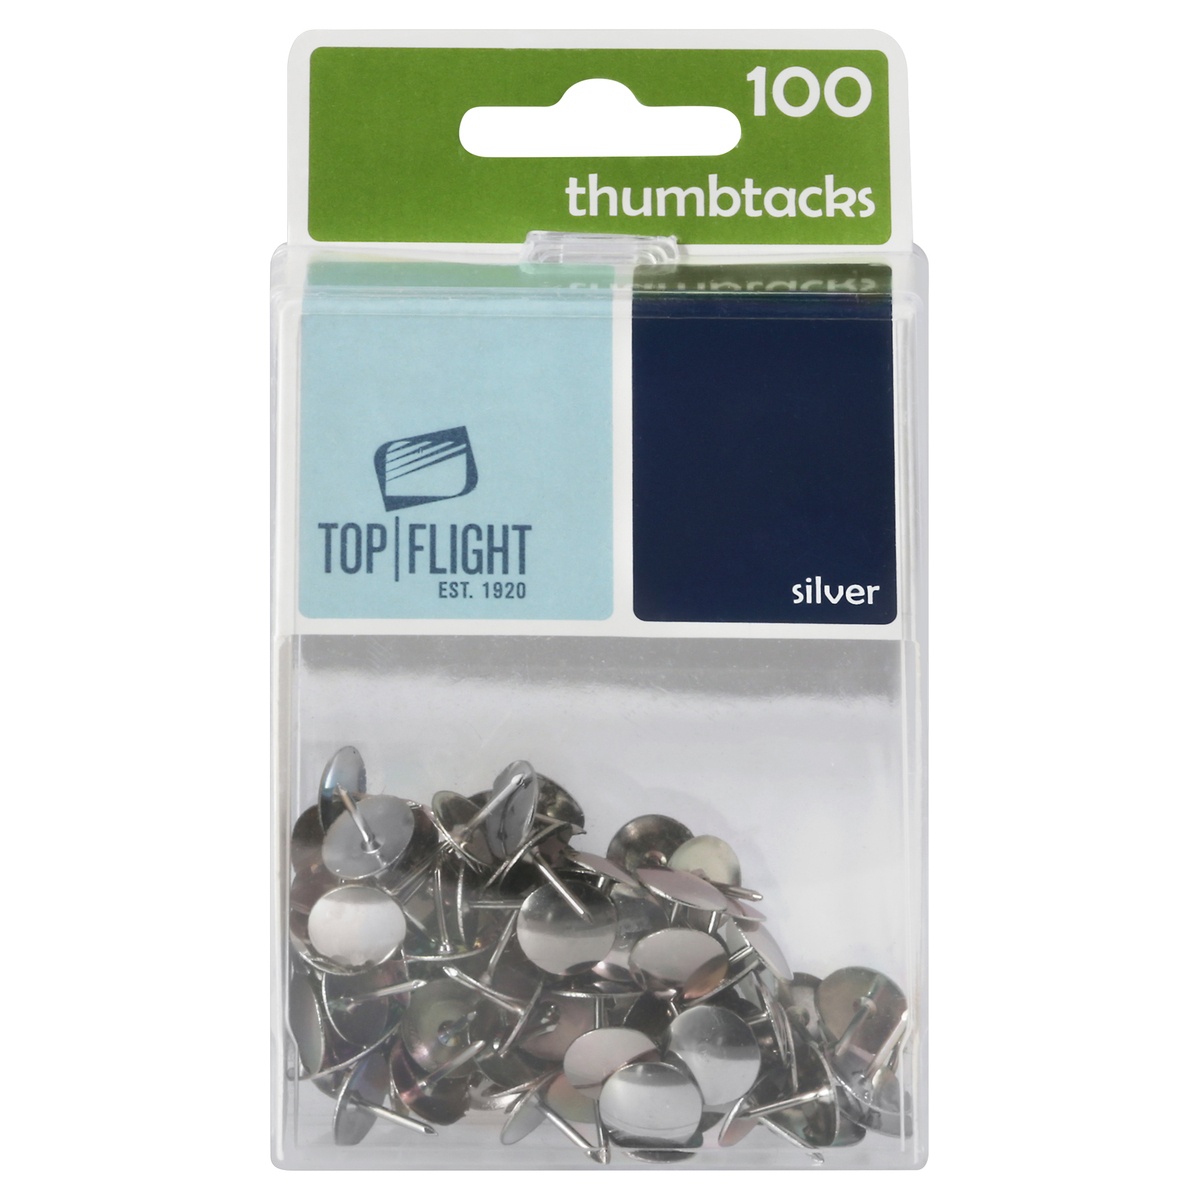 Thumb Tack 100 count, Silver